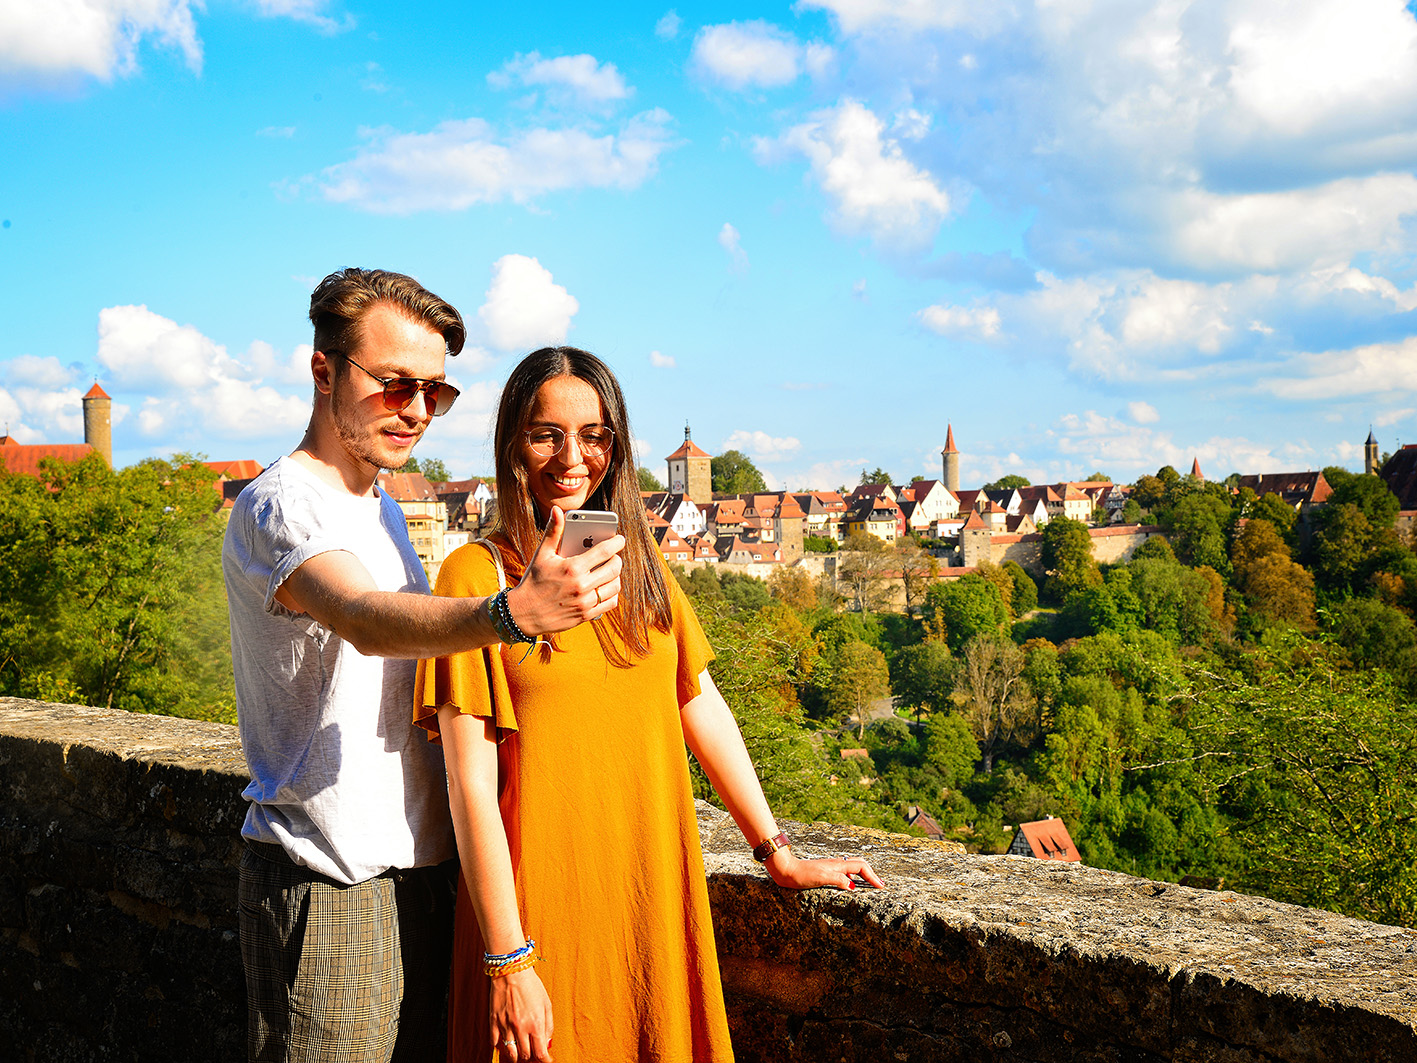 Der romantischestrasse-reiseblog zeigt ein junges Paar, das vor der Kulisse von Rothenburg ein Selfie macht